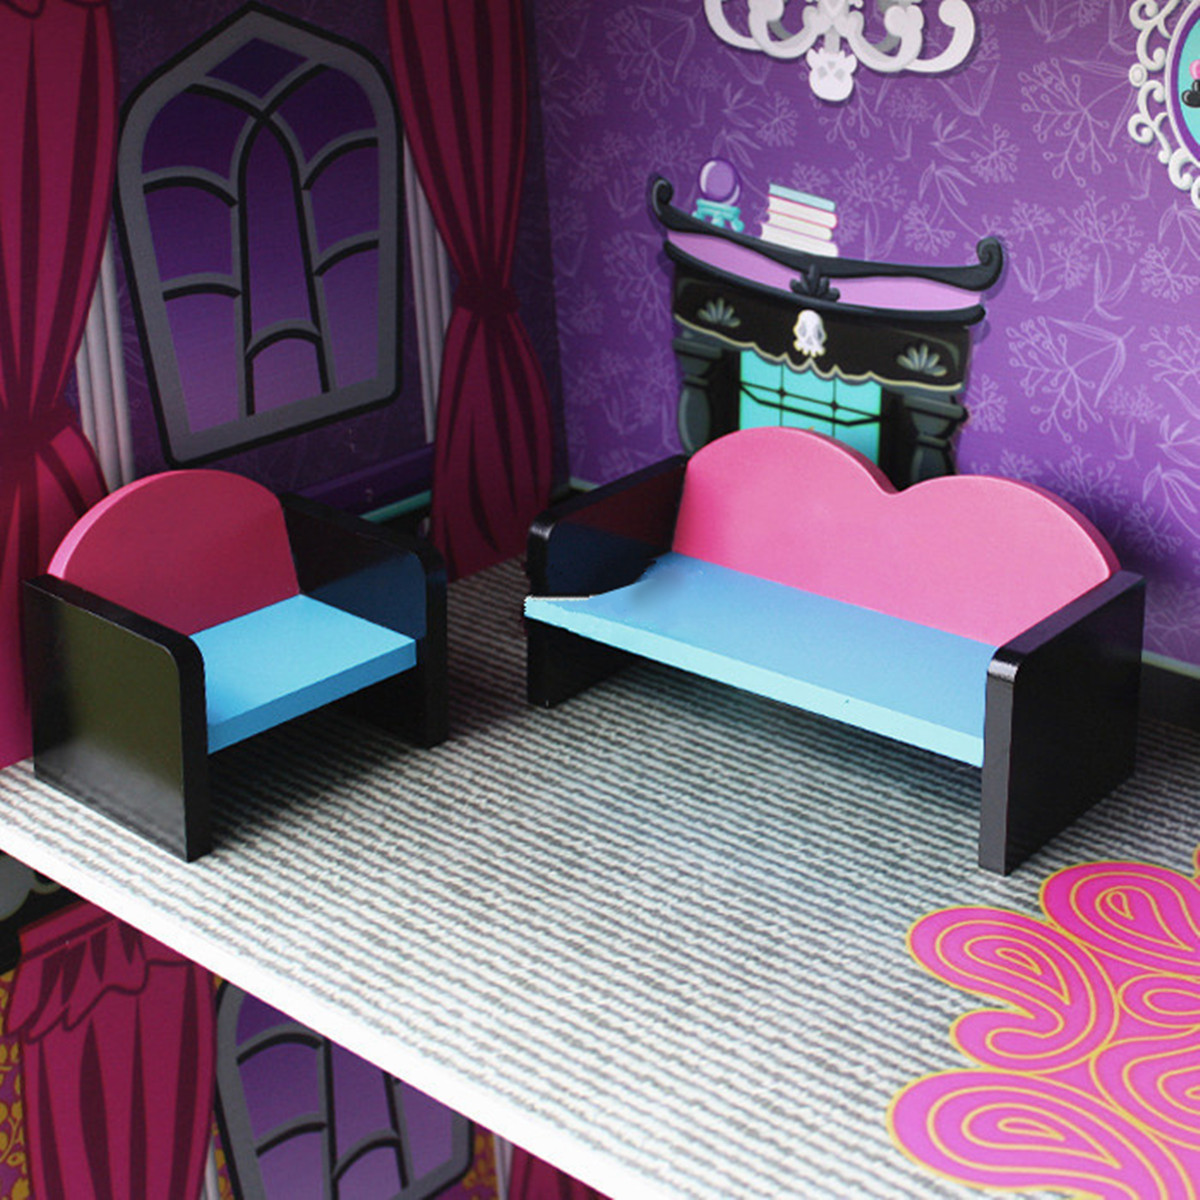 Purple-Villa-DIY-Wood-Big-Doll-House-Dream-Light-Miniature-Furniture-Kits-Big-Kid-Gift-1467953-2